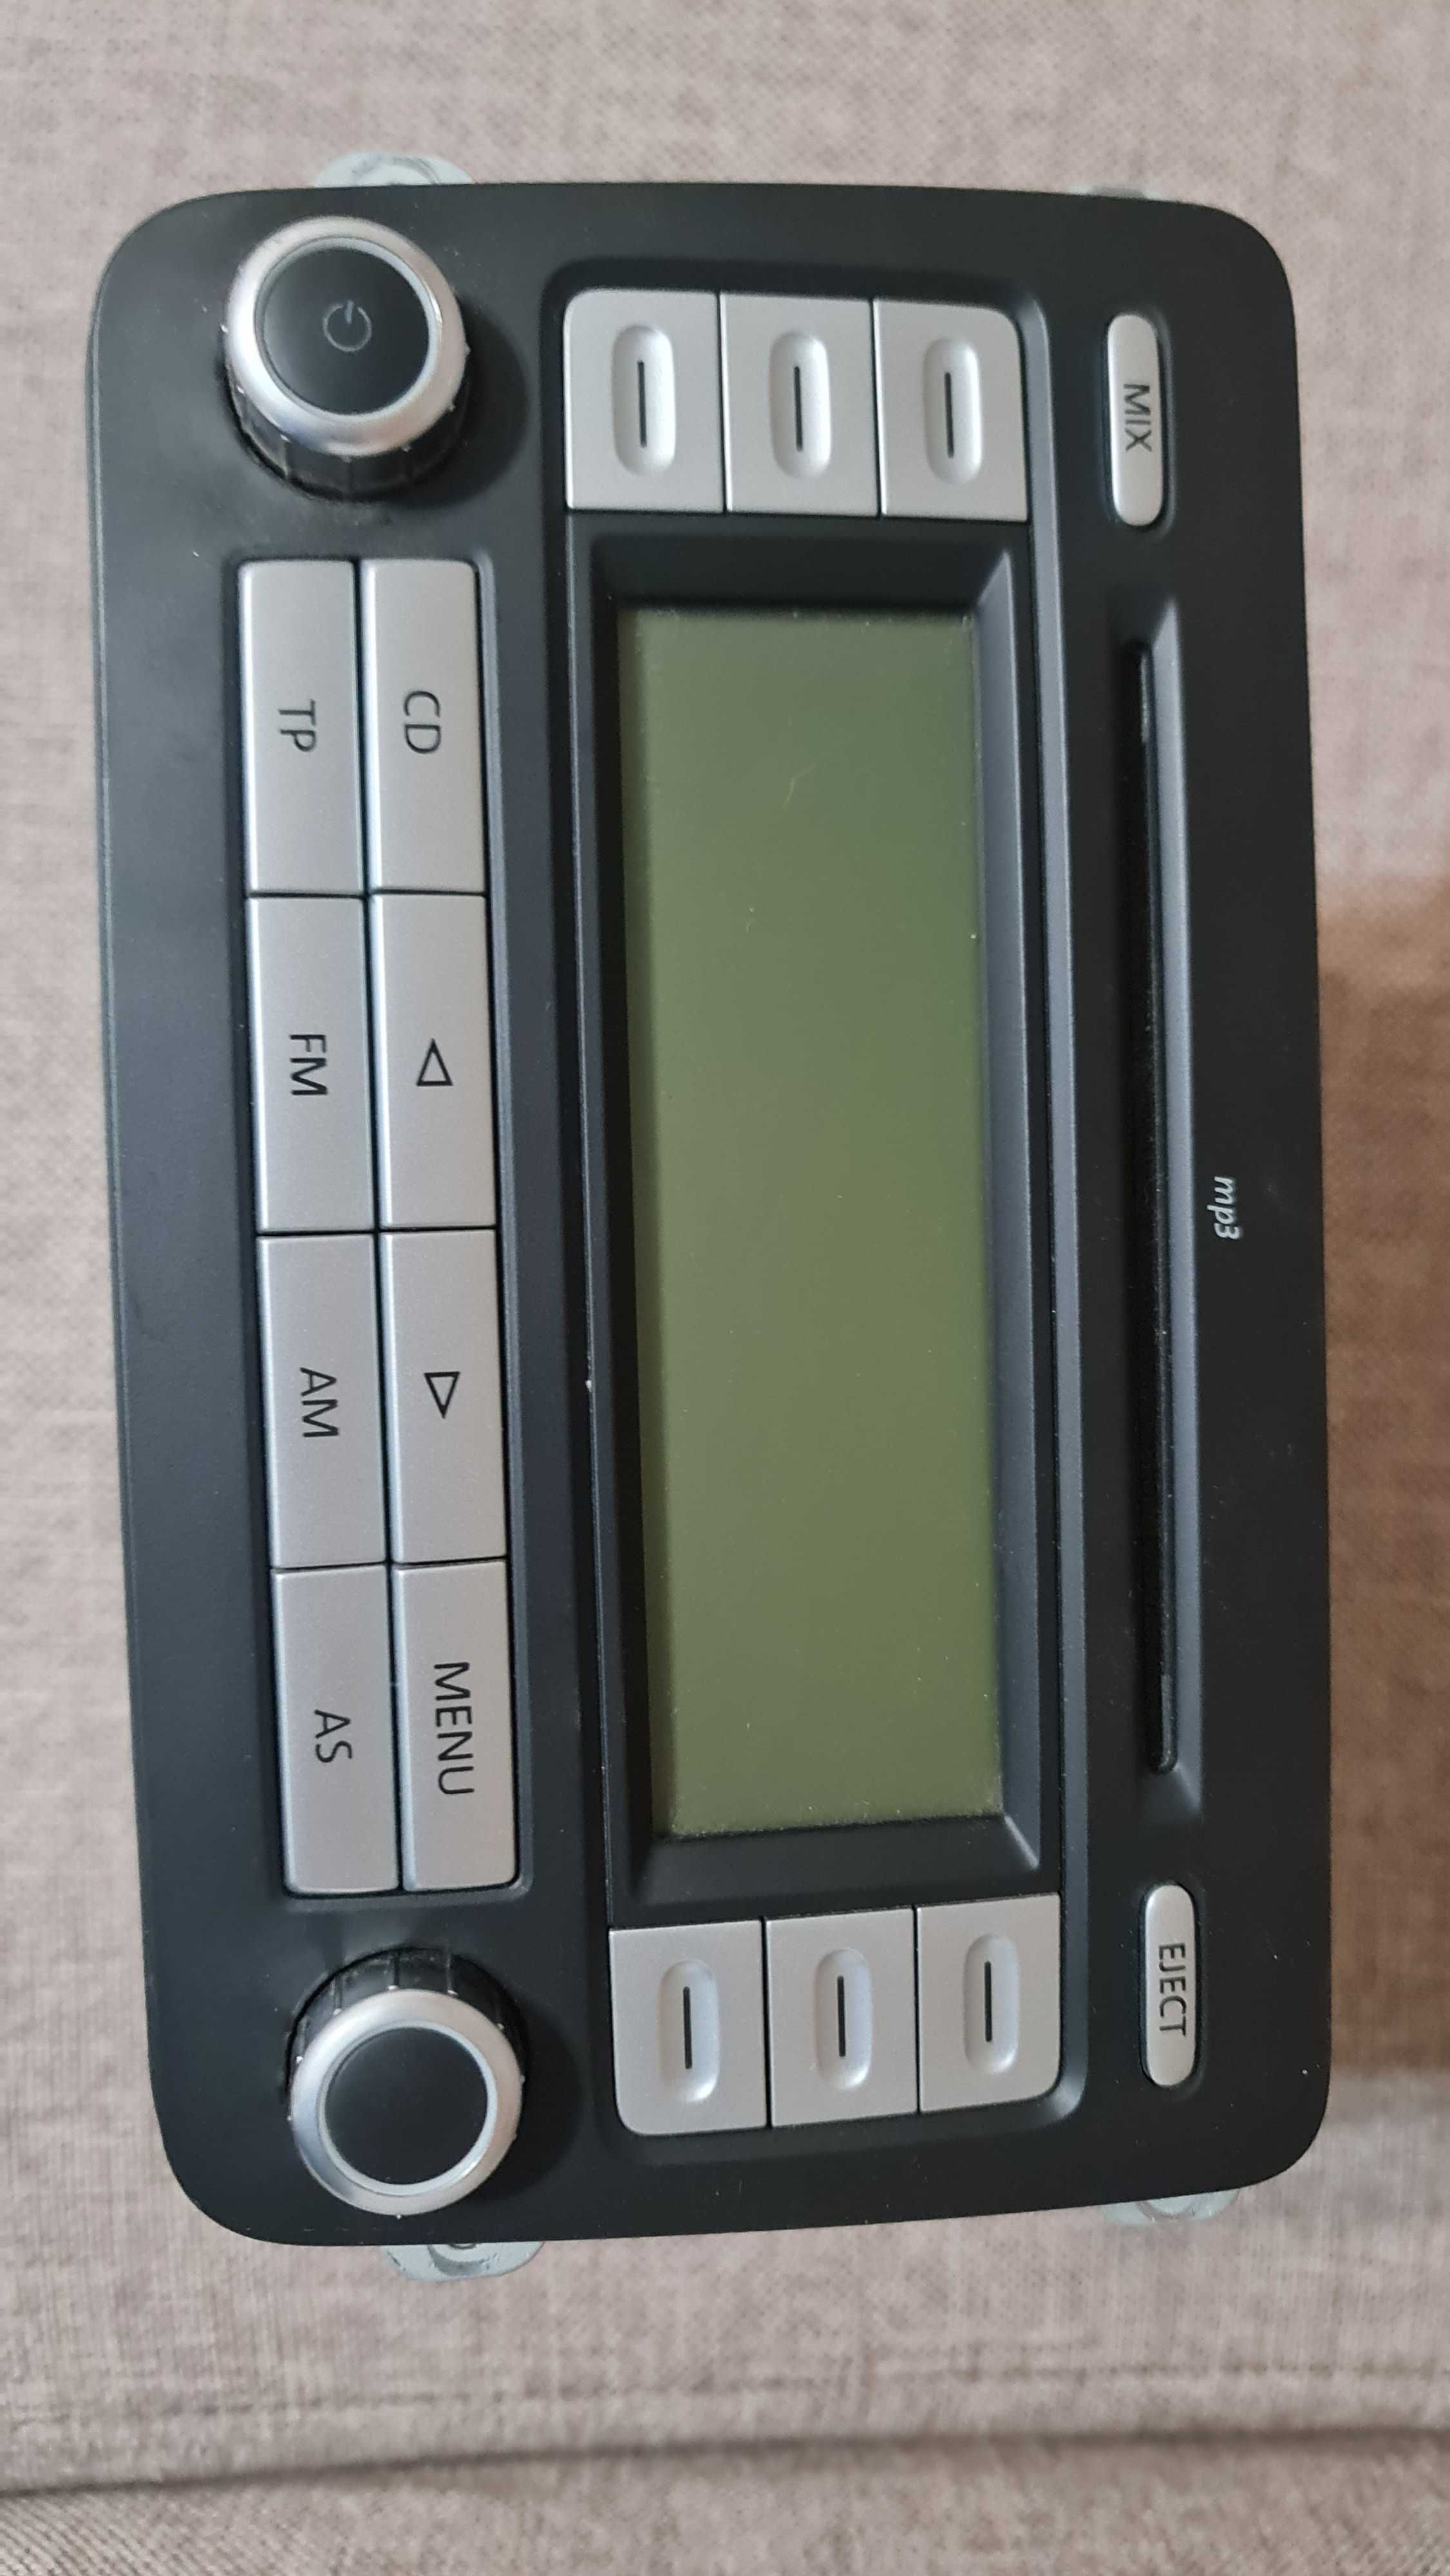 RCD300 MP3, original VOLKSWAGEN